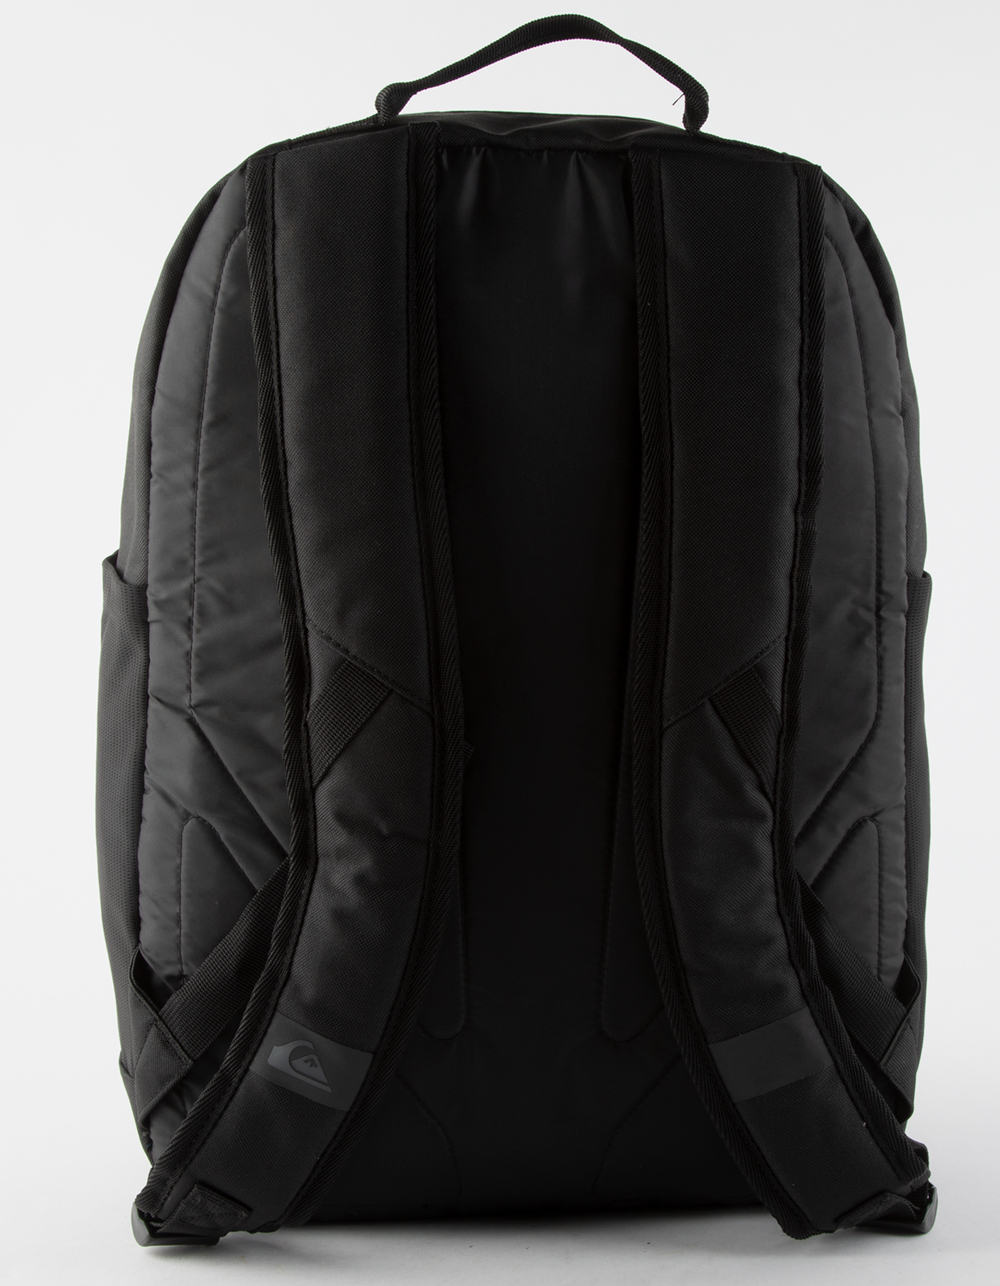 QUIKSILVER Schoolie Cooler Backpack - BLACK COMBO | Tillys